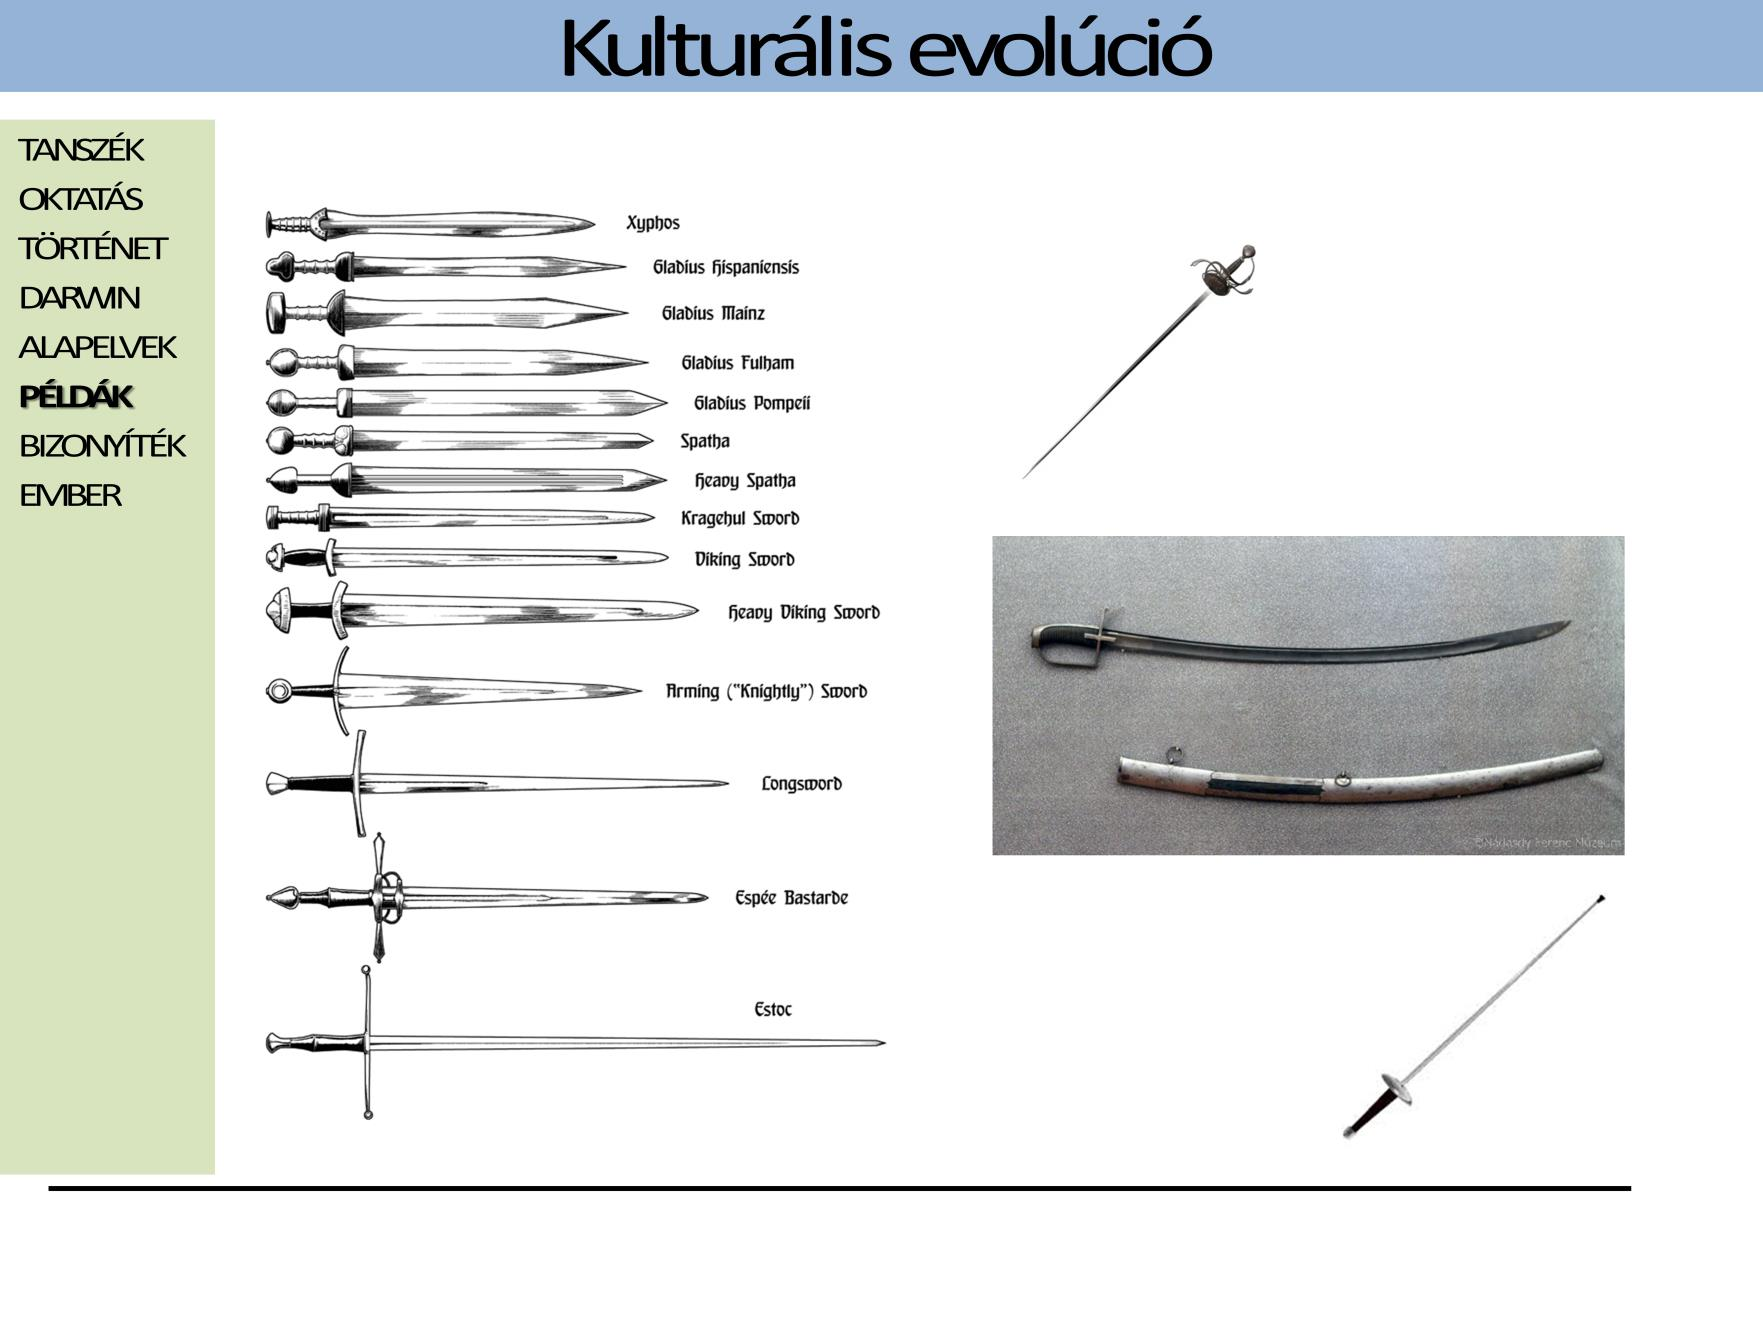 A kard formák, mint az emberi kultúra termékei, egy evolúciós folyamat révén alakulnak. A technikai fejlődés, a páncélok és a lőfegyverek fejlődése tetten érhető az elterjedt kard alakok változásában.